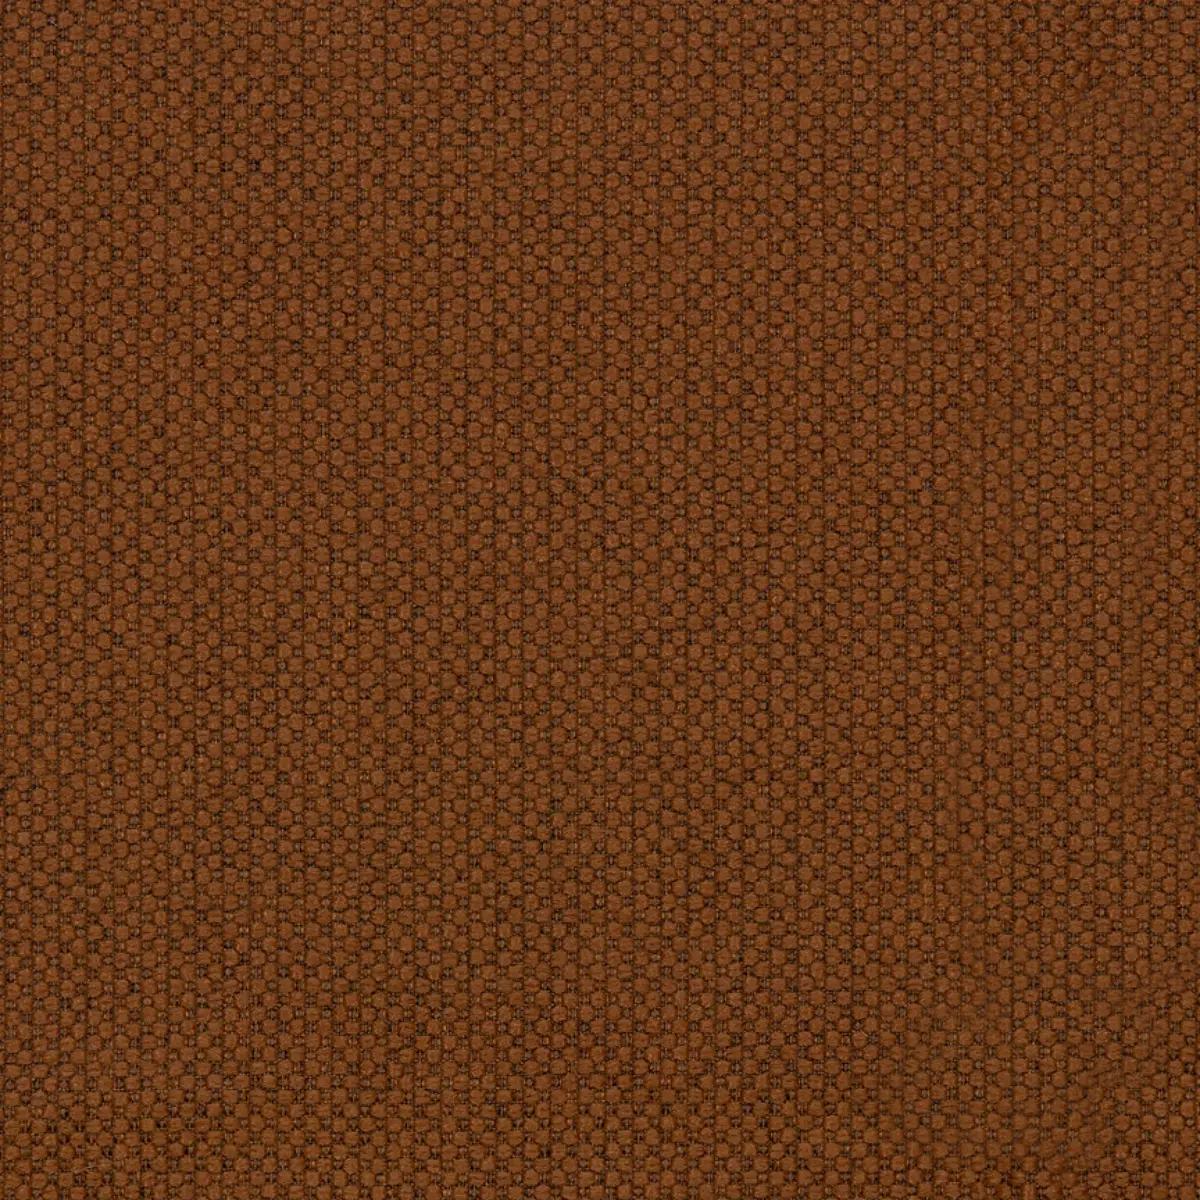 Fabric sample Merit 0033 brown